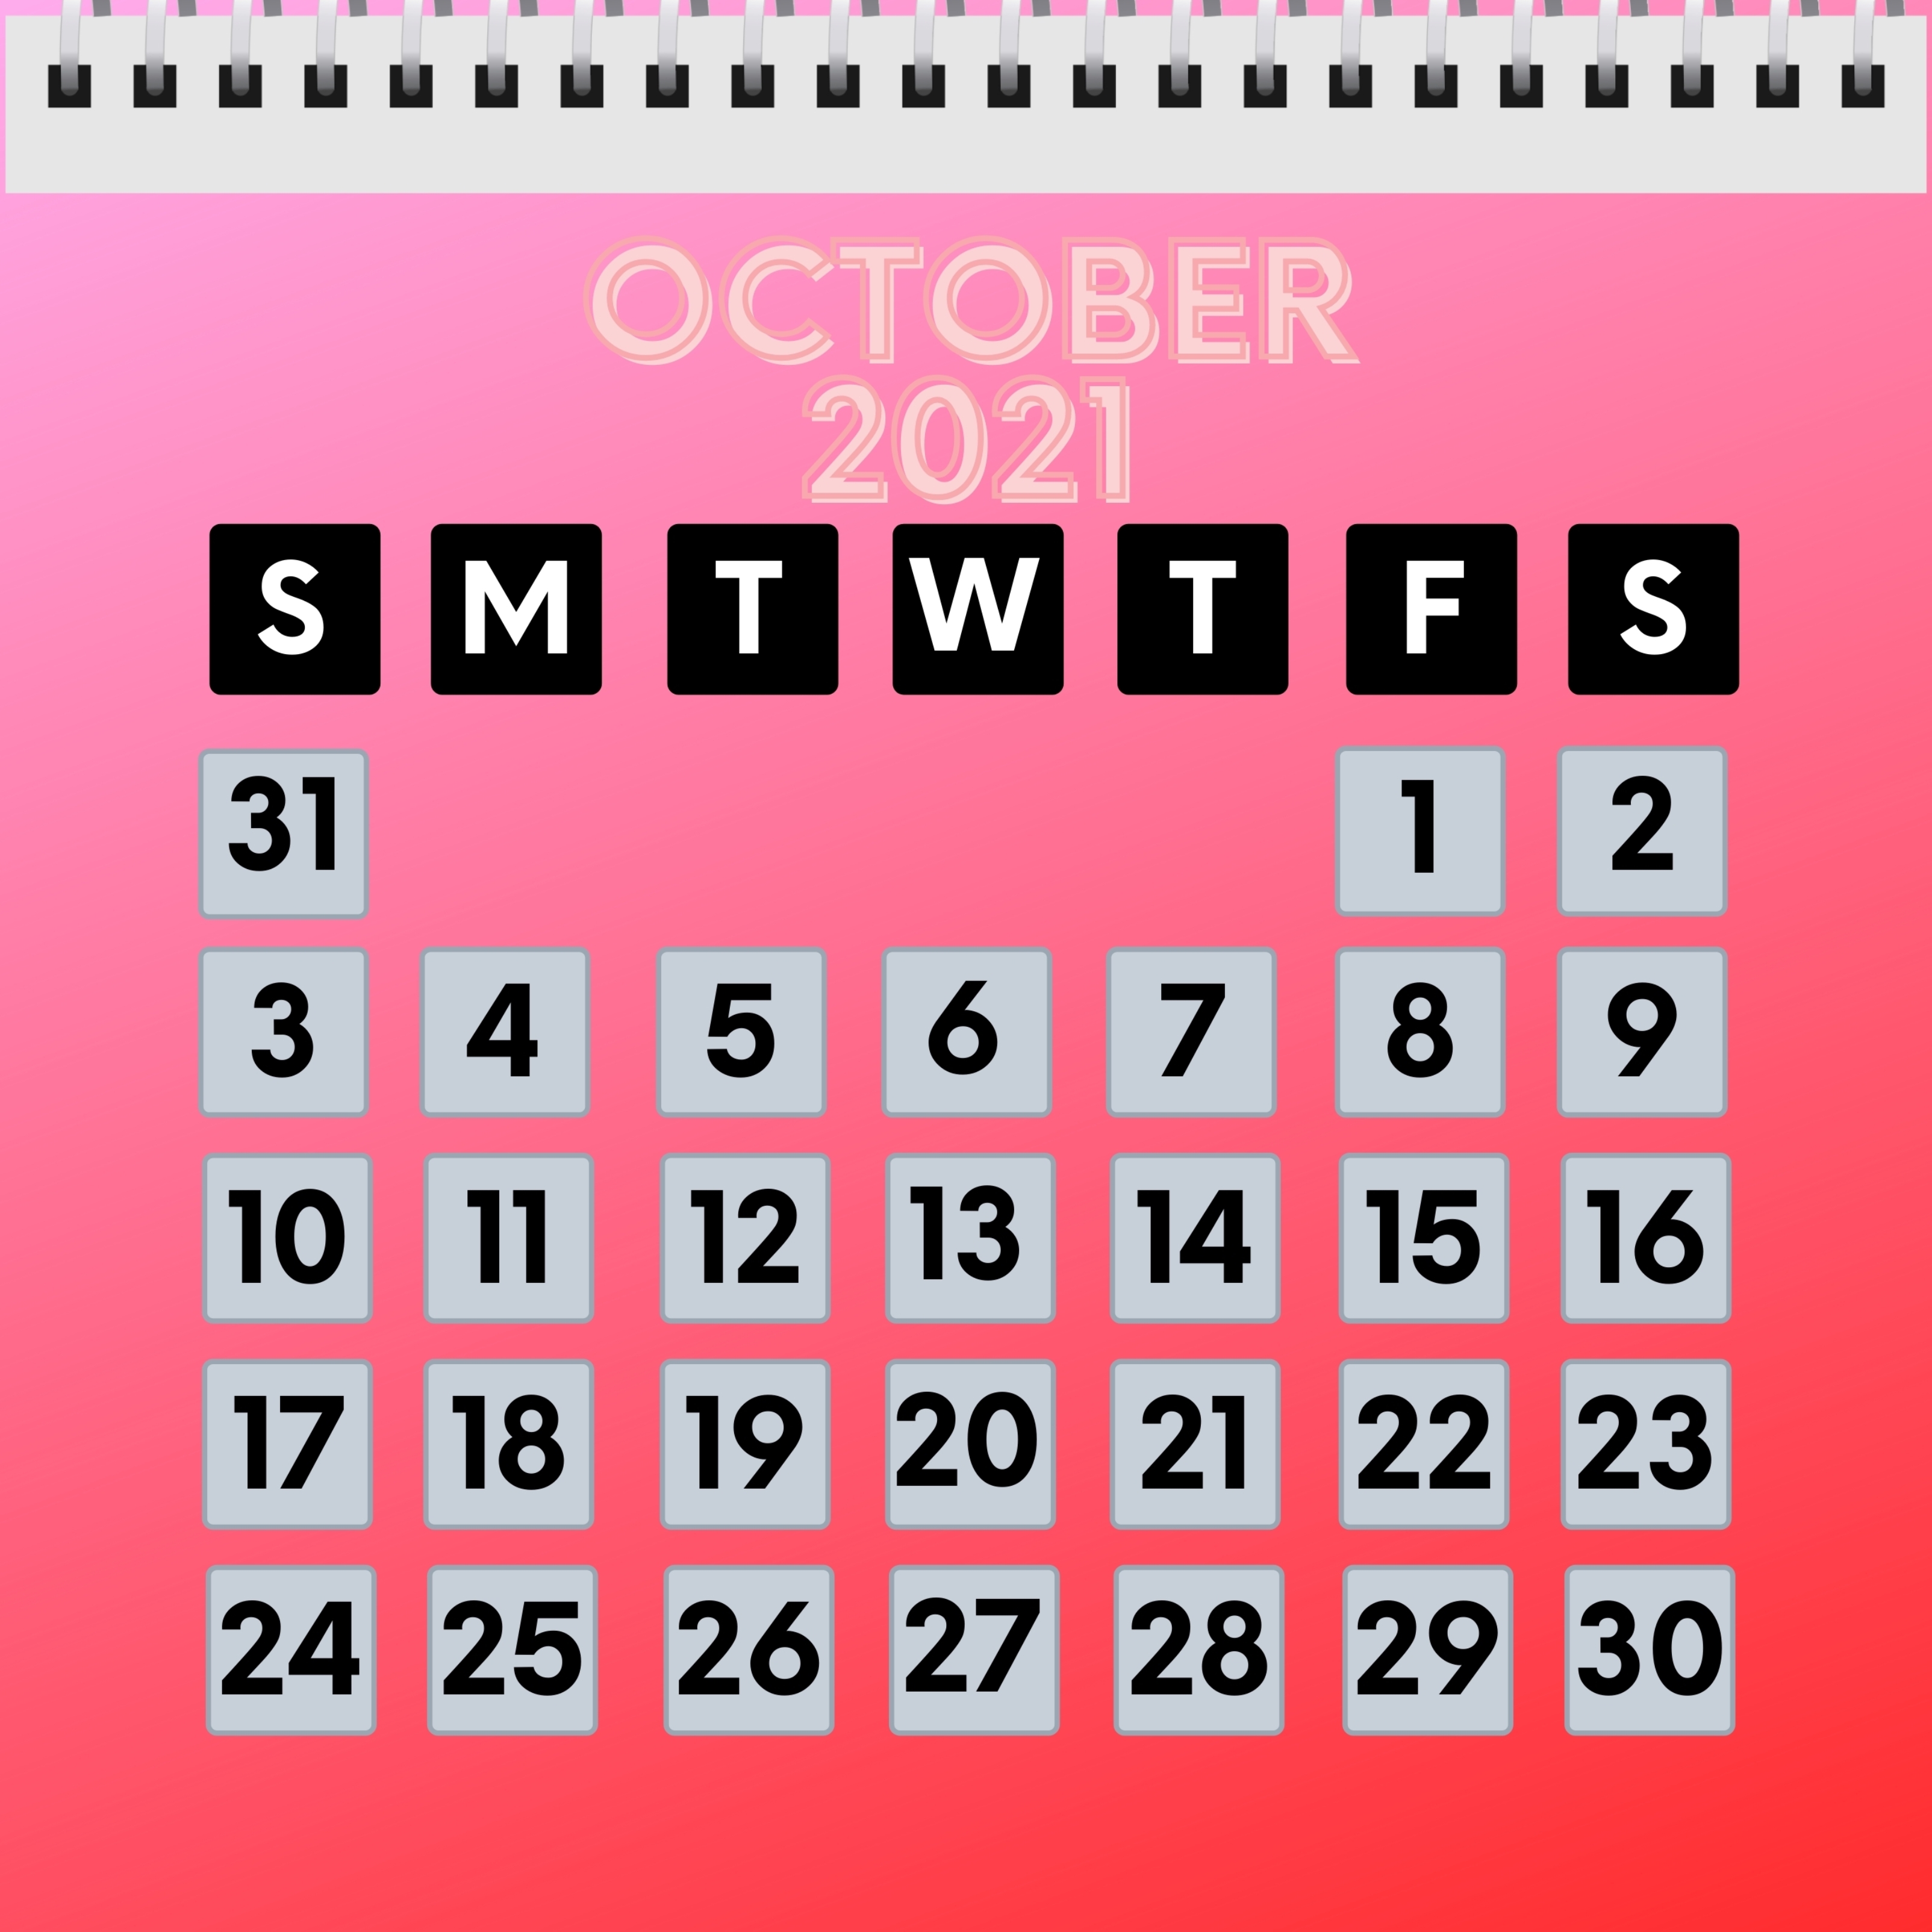 iPad Wallpapers October 2021 Calendar iPad Wallpaper 3208x3208 px